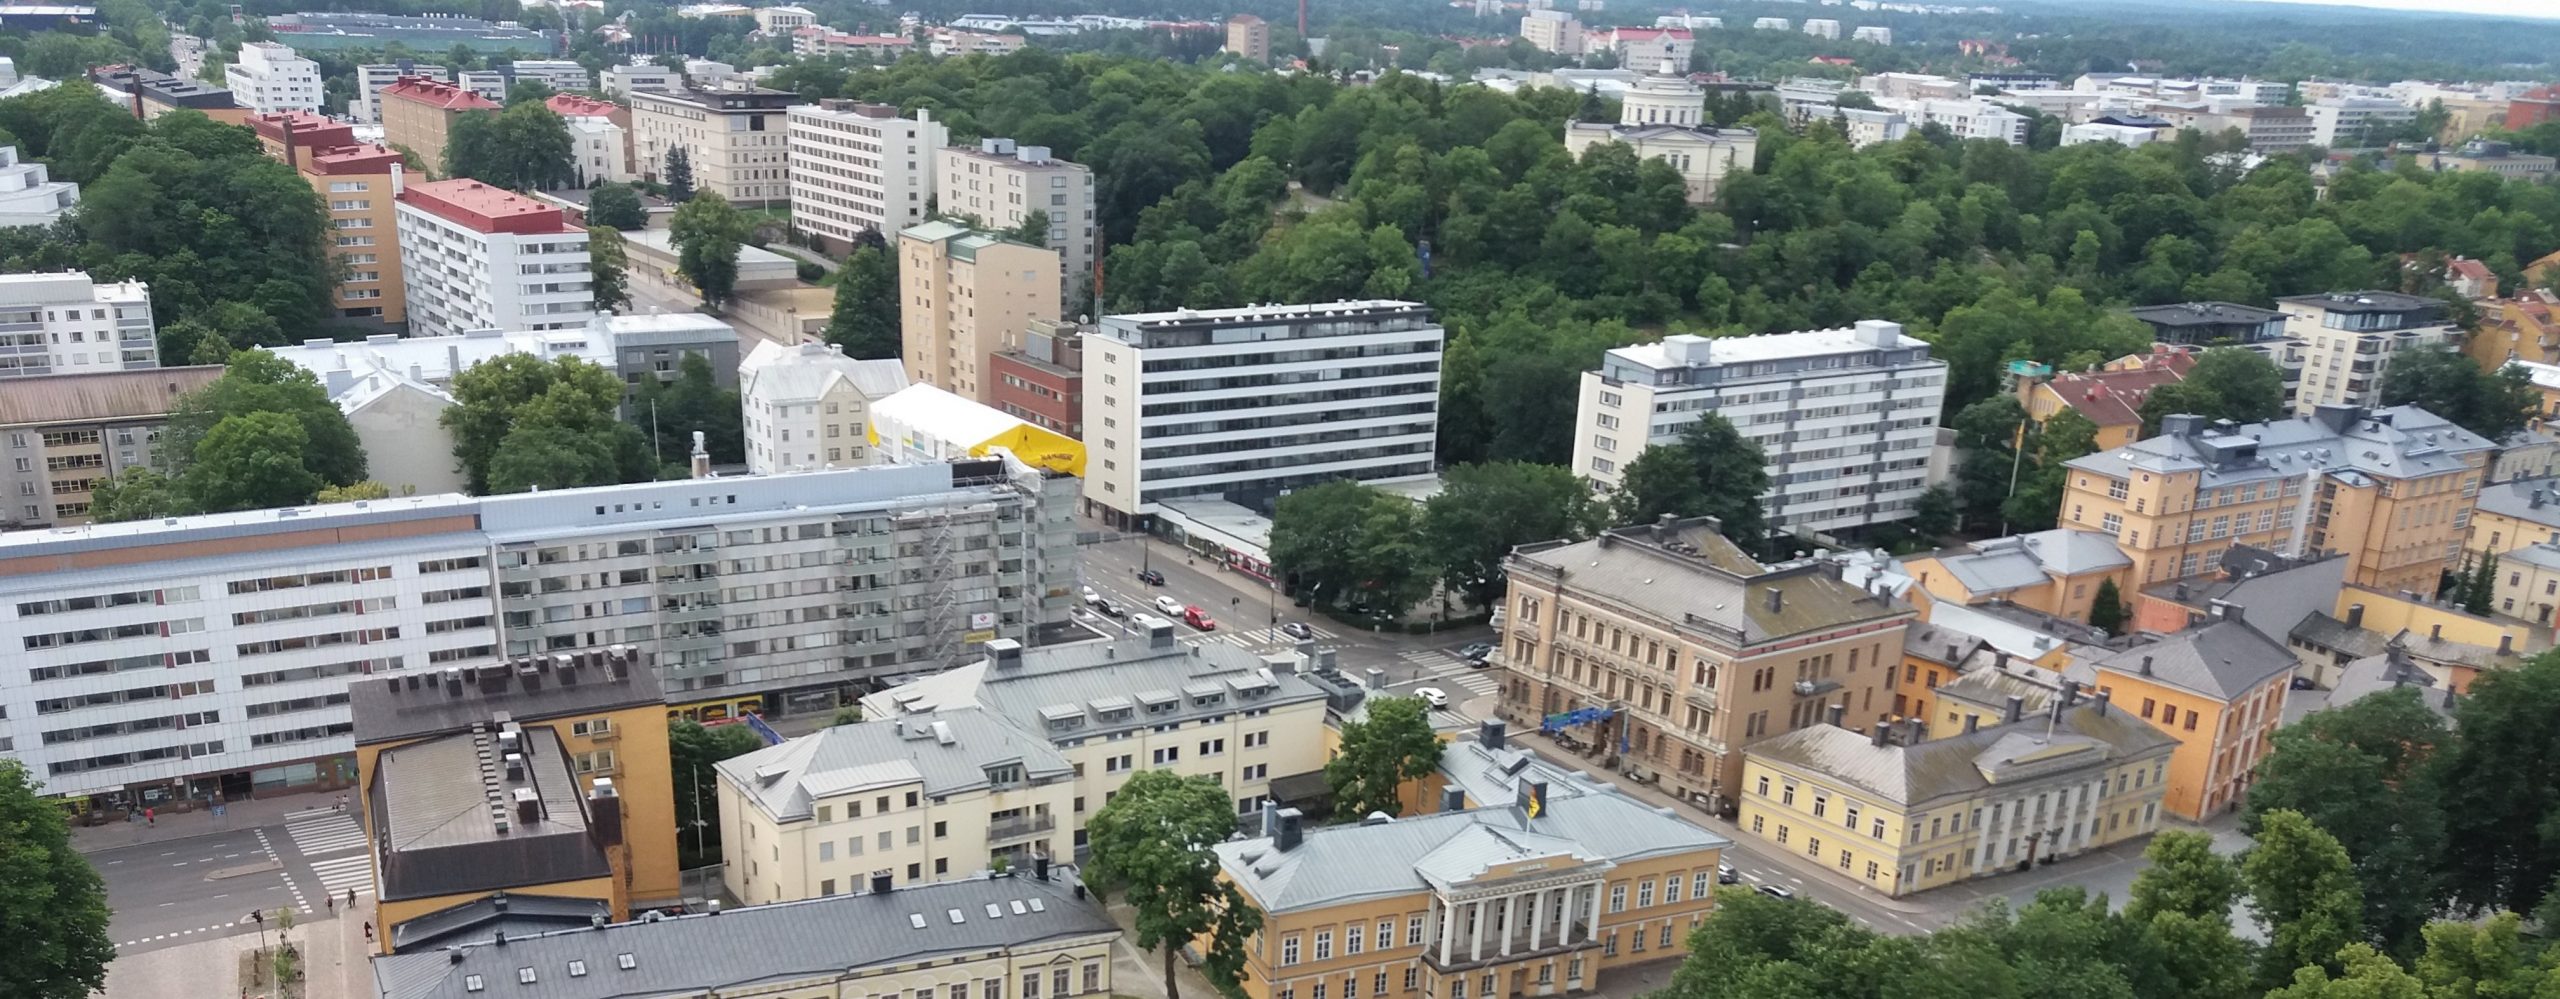 Kuvassa näkyy Turun eteläinen keskusta. Etualalla tuomiokirkon vieressä rakennuskanta on vanhinta ja matalinta. Kuvassa on paljon valkoisia, vaaleita ja beigejä kerrostaloja monelta eri vuosikymmeneltä.